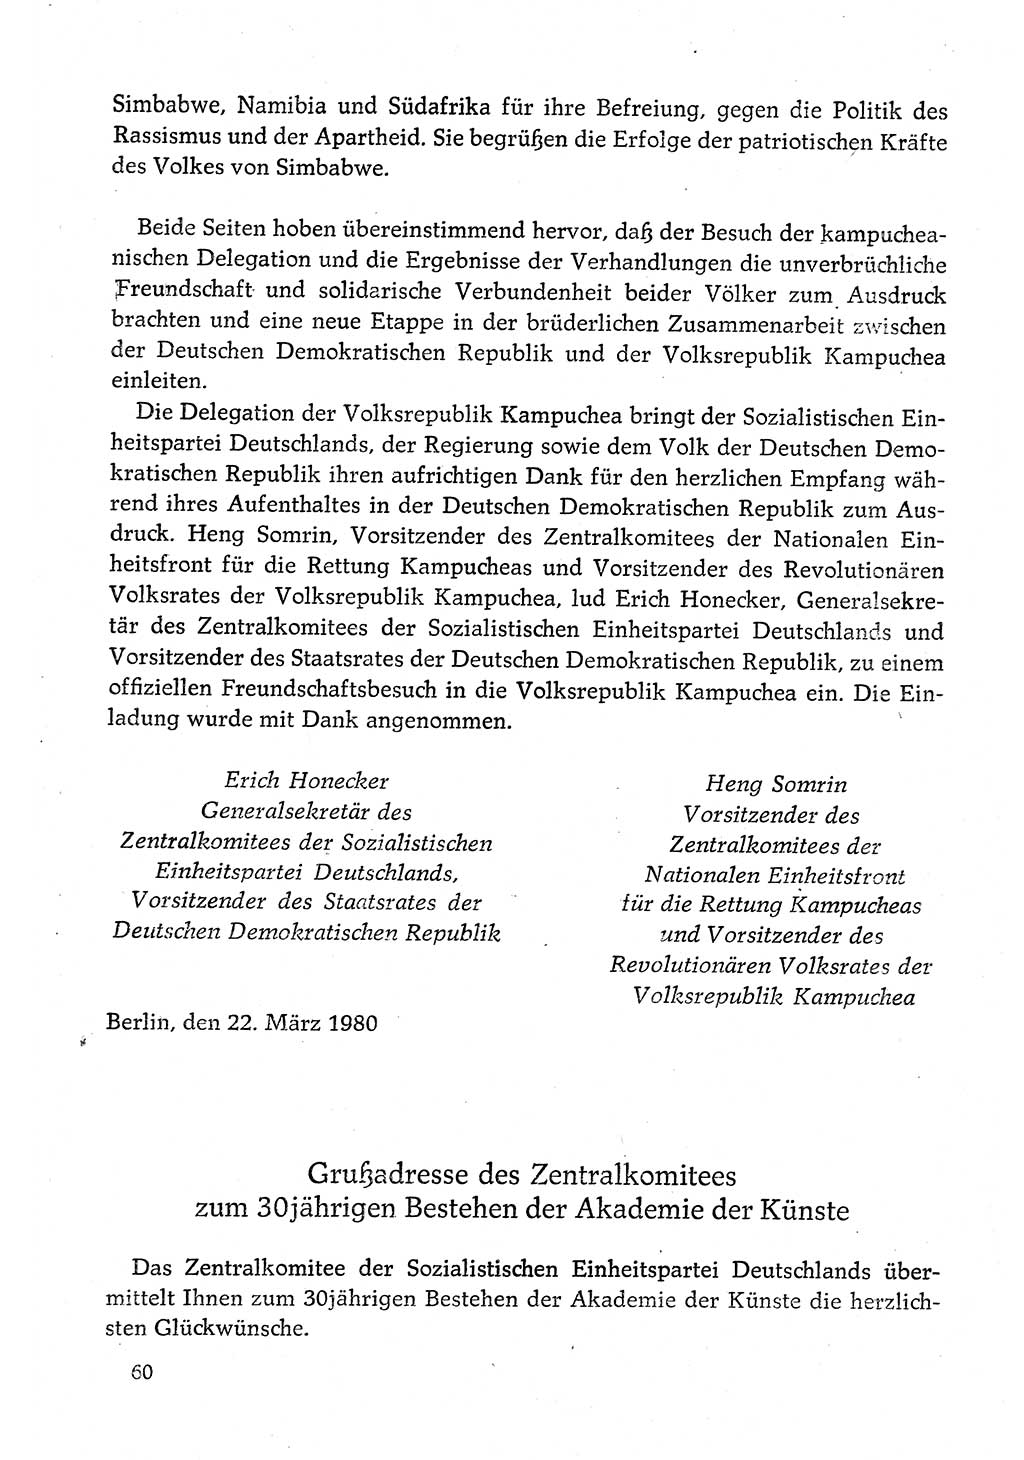 Dokumente der Sozialistischen Einheitspartei Deutschlands (SED) [Deutsche Demokratische Republik (DDR)] 1980-1981, Seite 60 (Dok. SED DDR 1980-1981, S. 60)